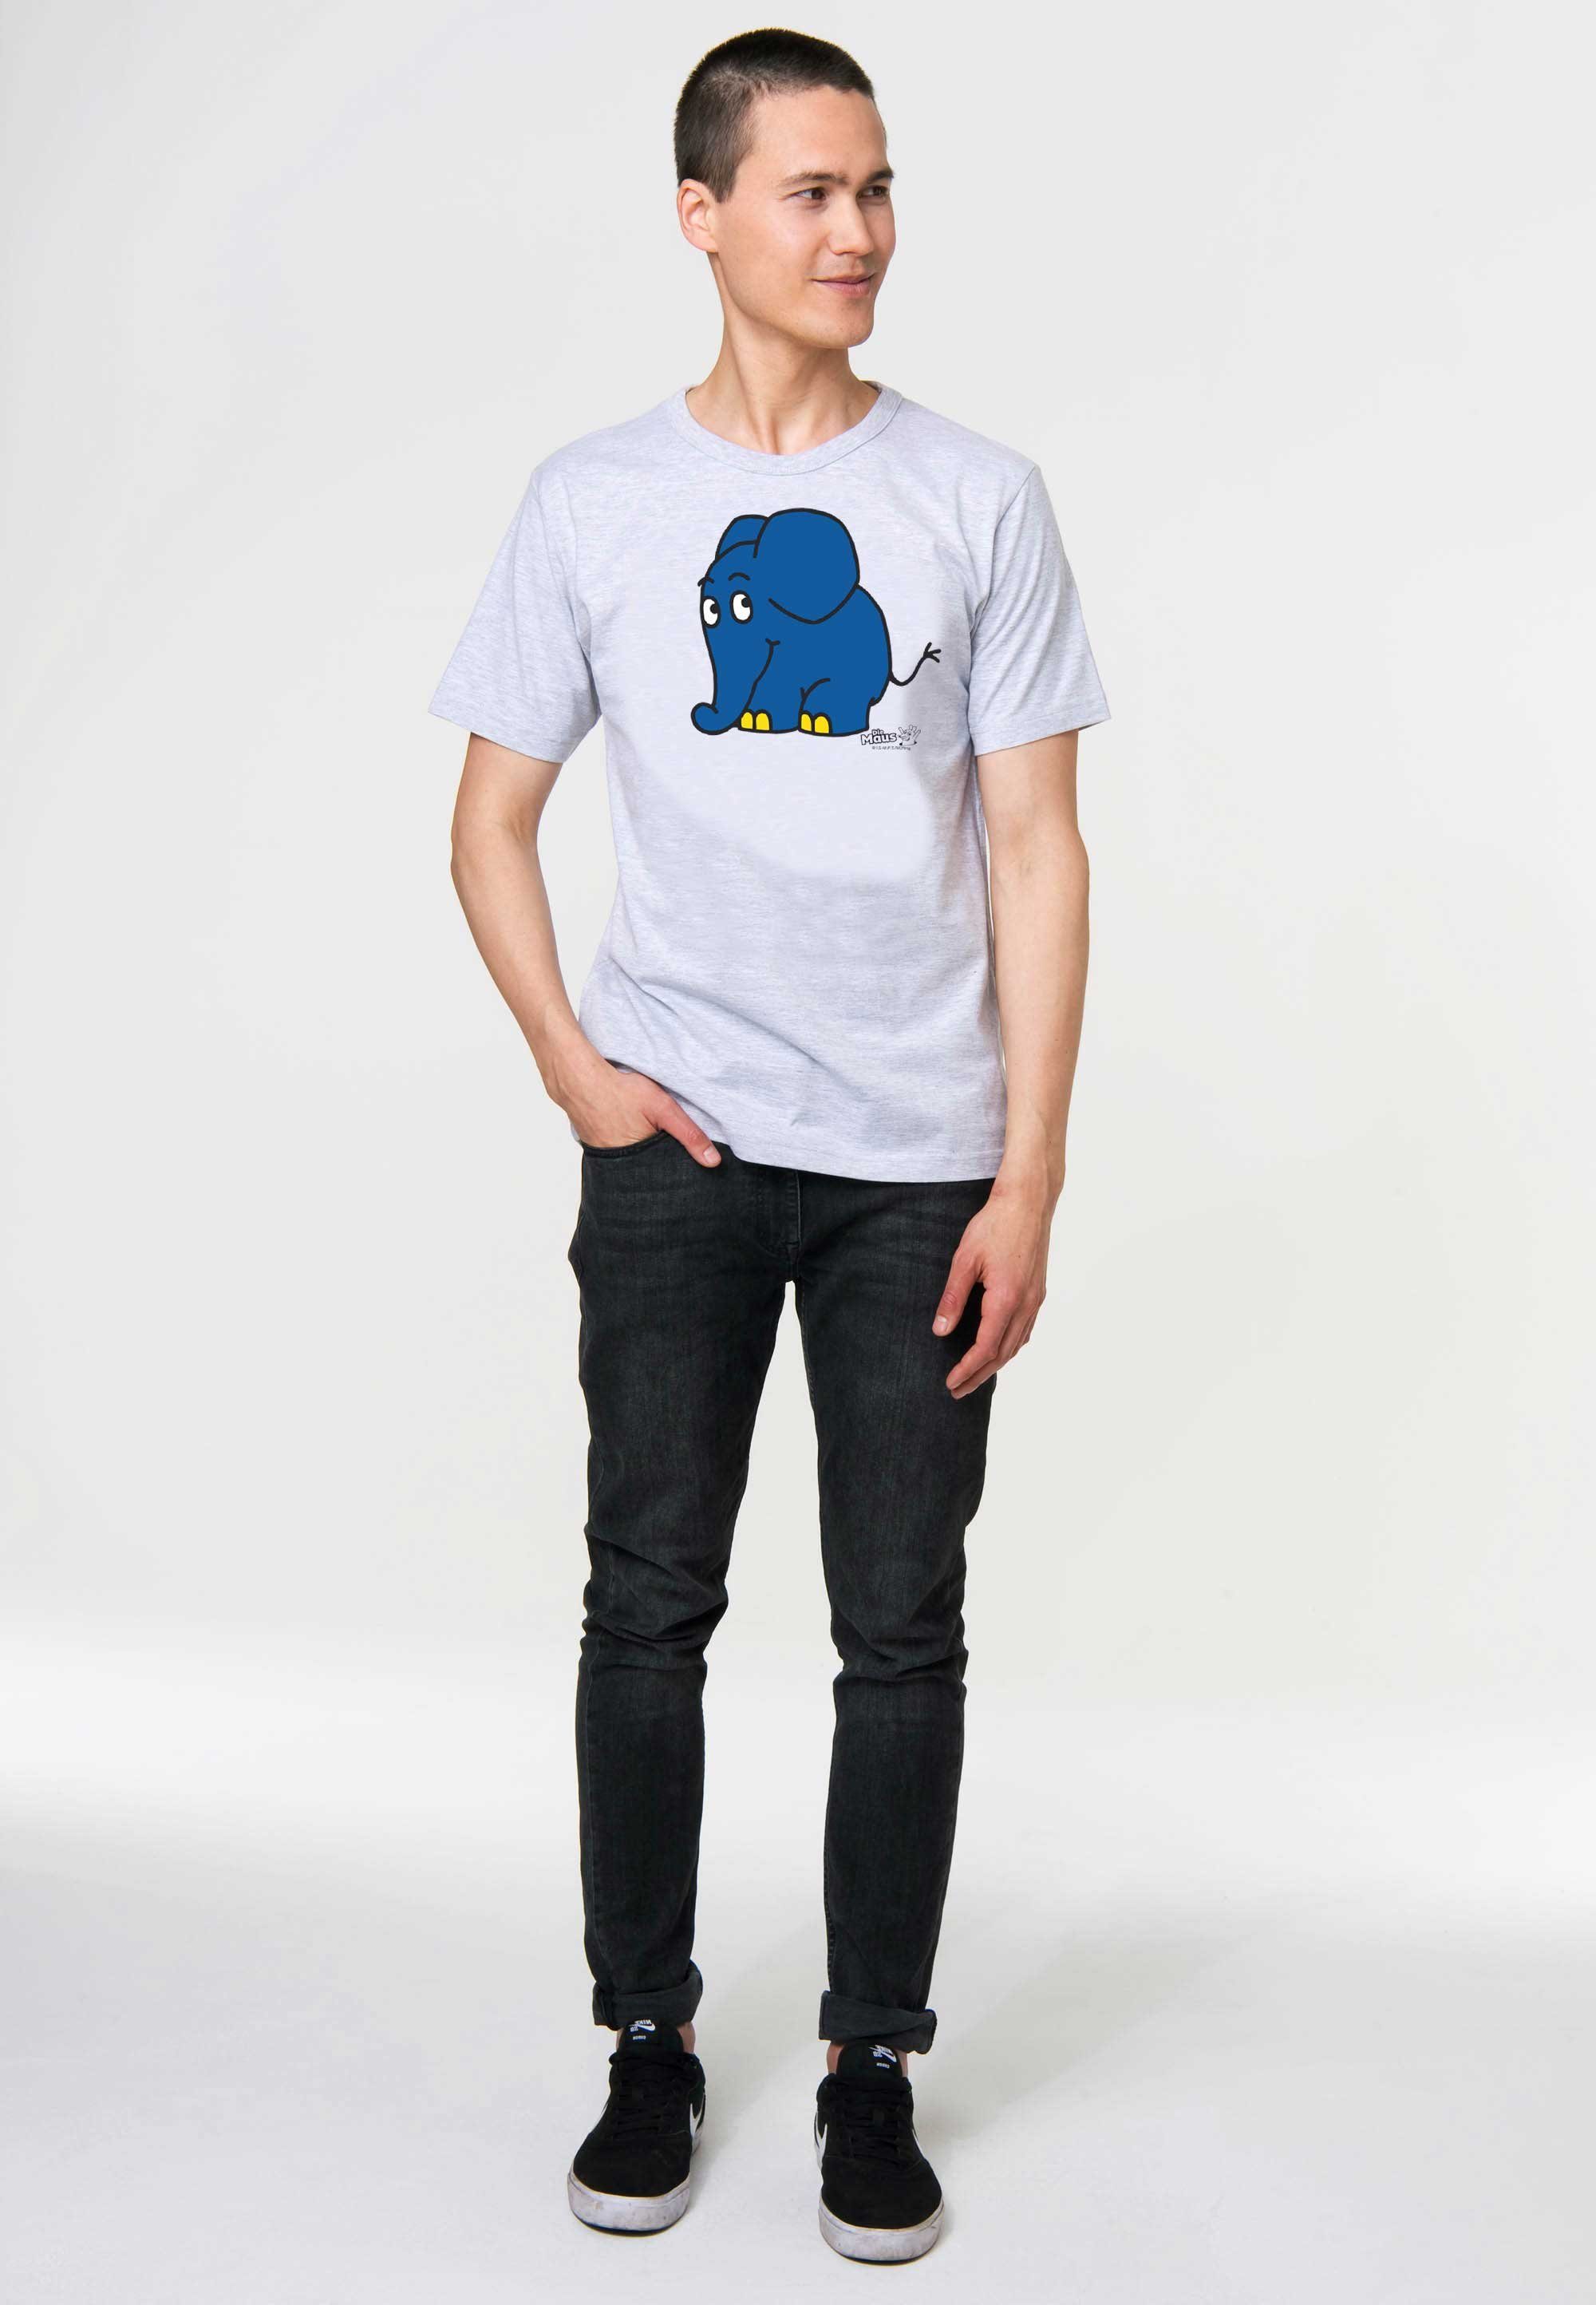 LOGOSHIRT T-Shirt Sendung mit mit Maus der - Print Elefant coolem